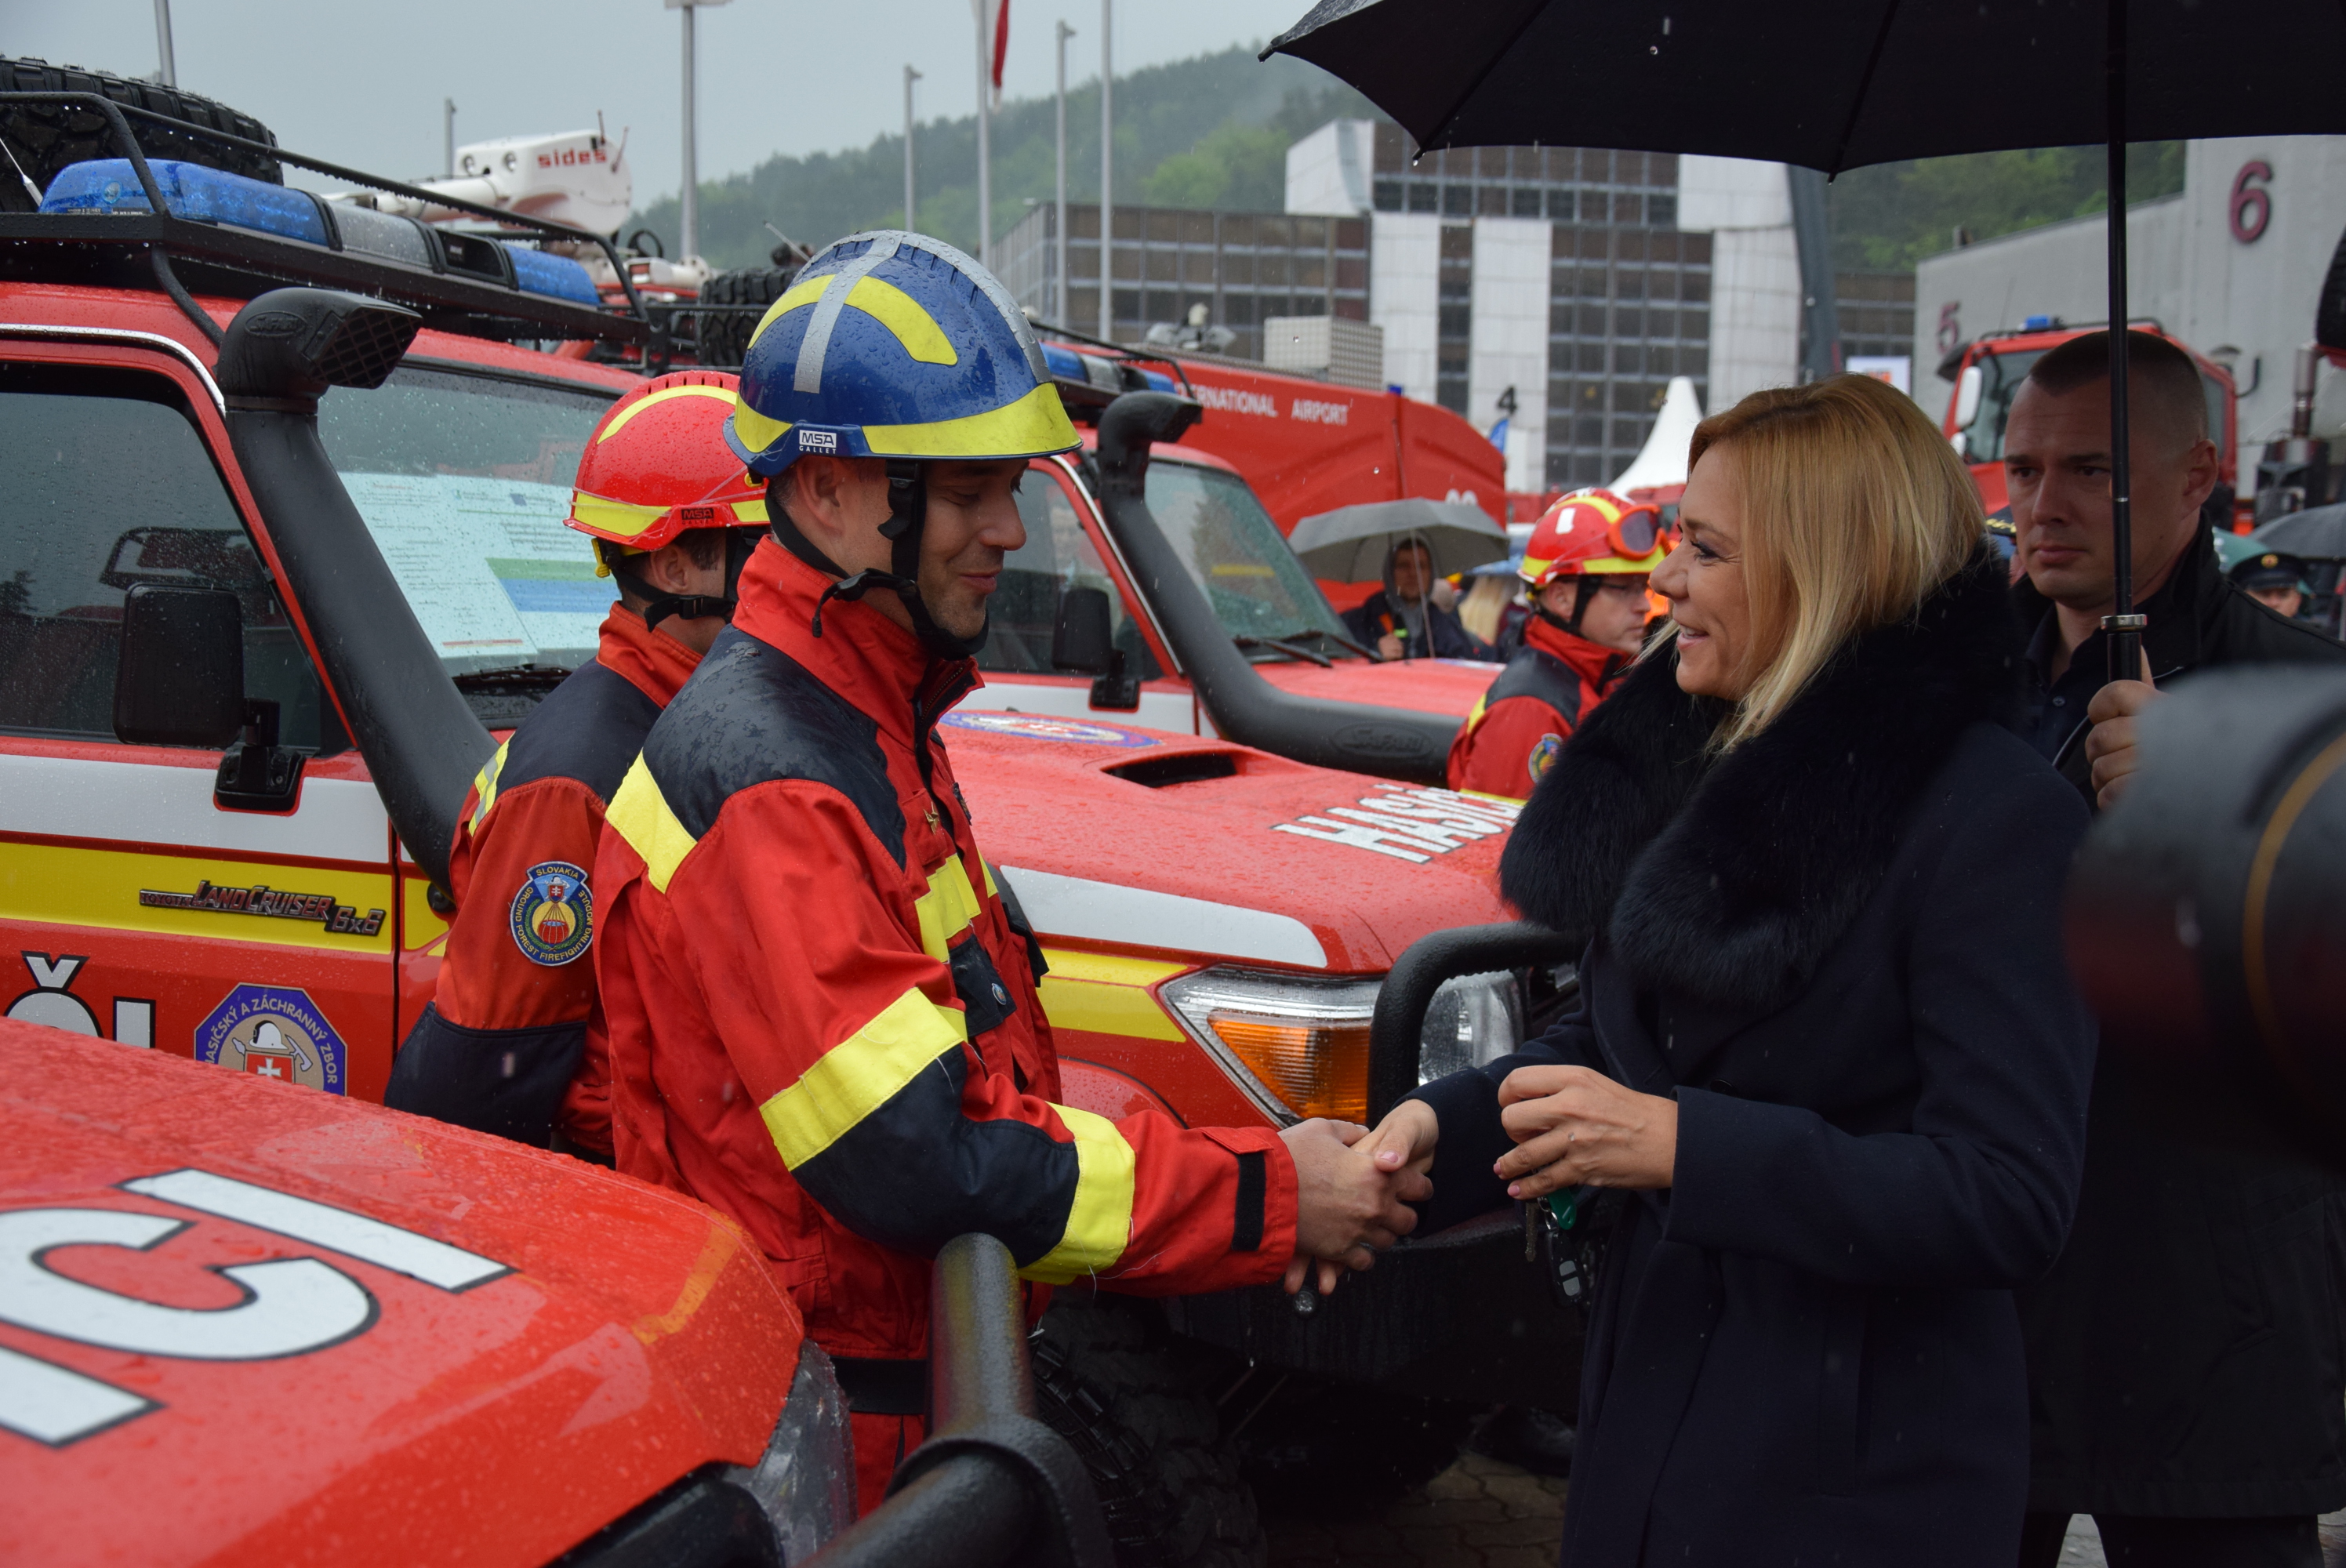 05 - Vďaka podpore z EÚ dostal Hasičský a záchranný zbor nové vozidlá 6x6